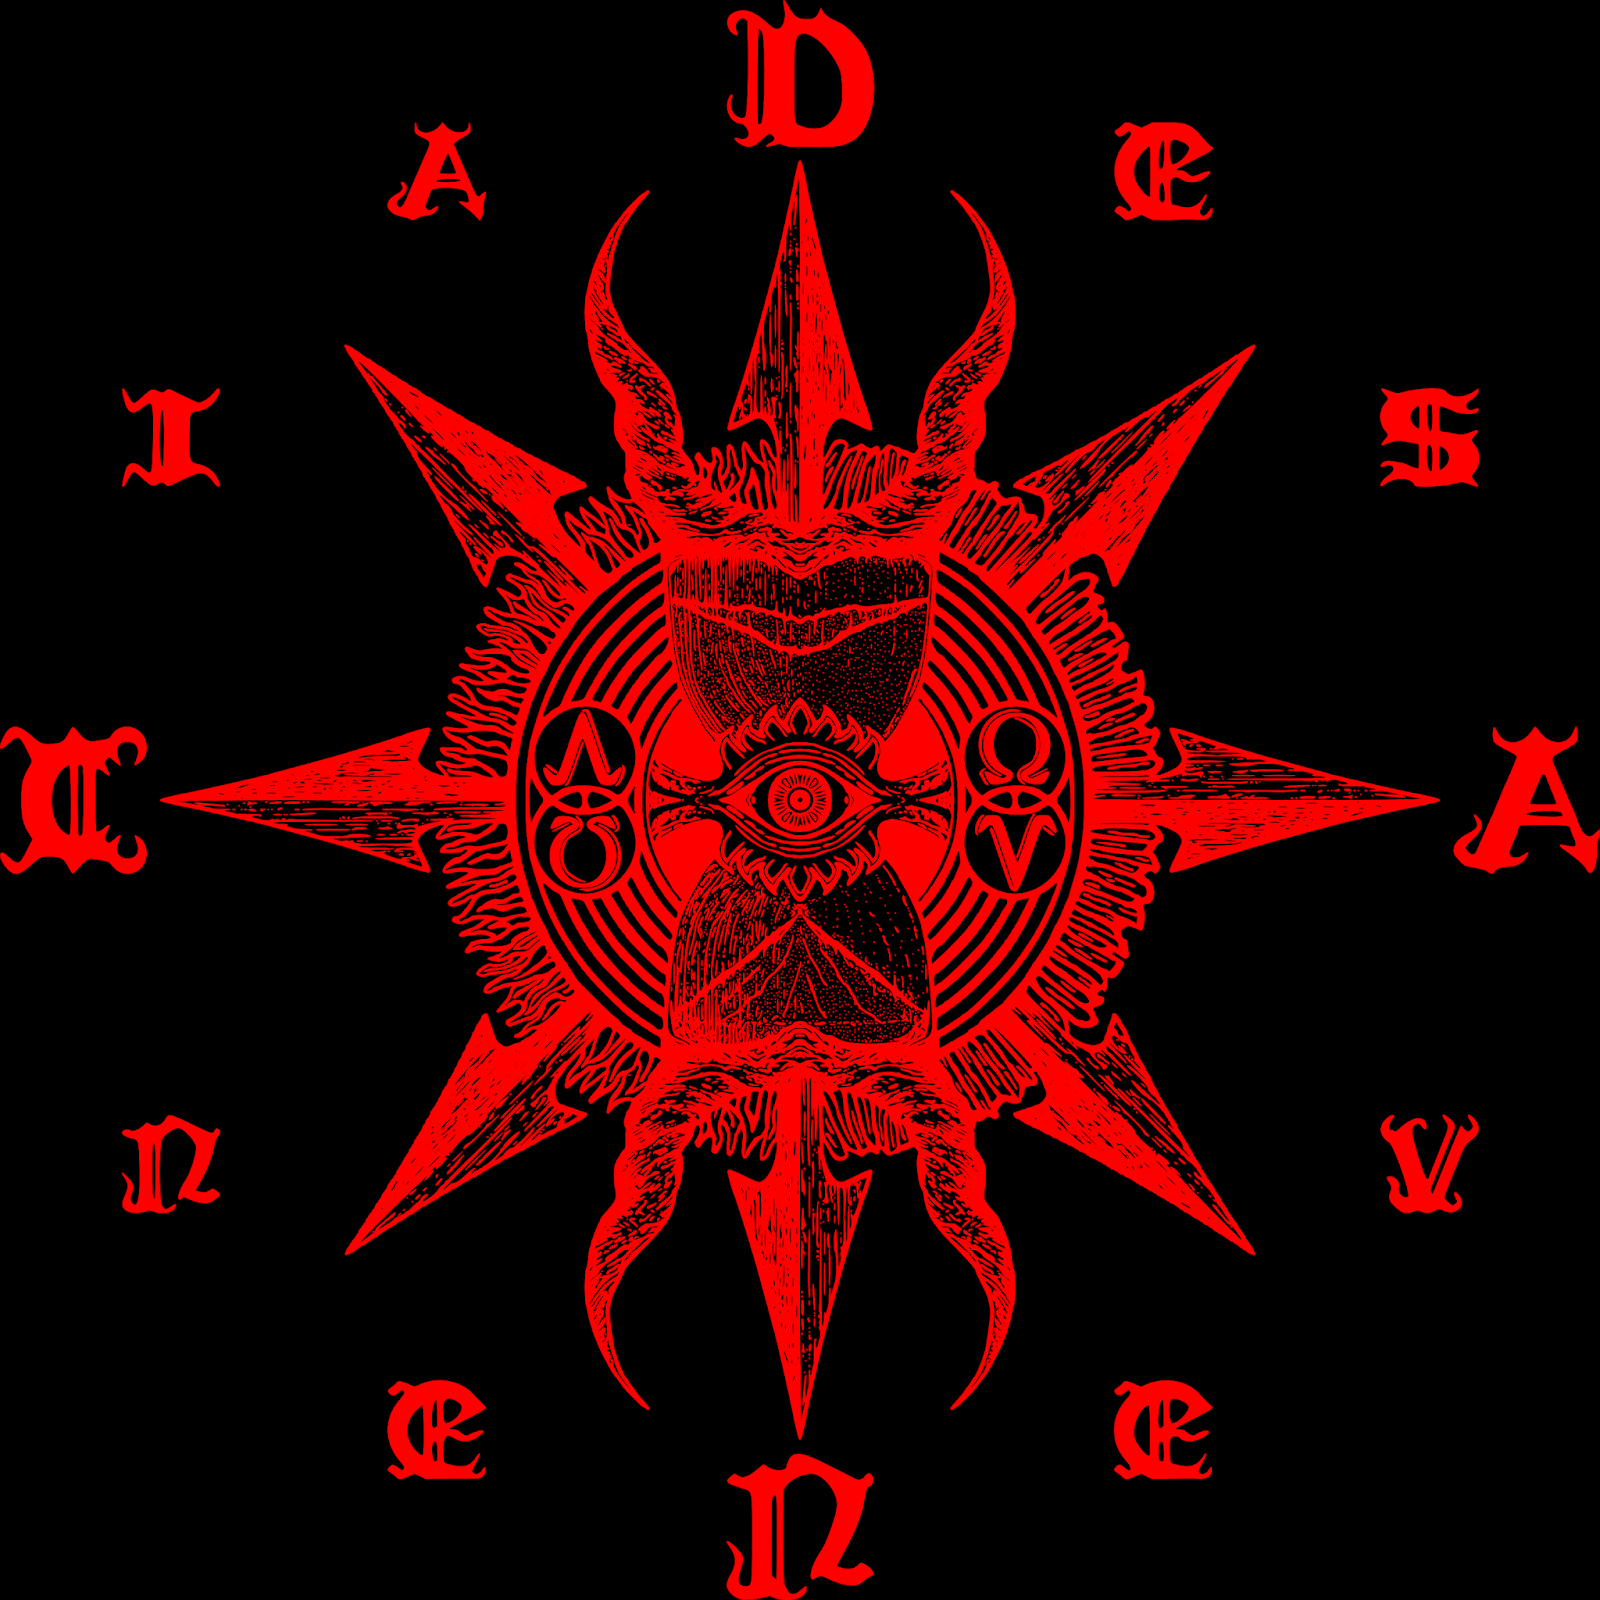 Chaos Logo - Desavenencia: The Desavenencia Logo 